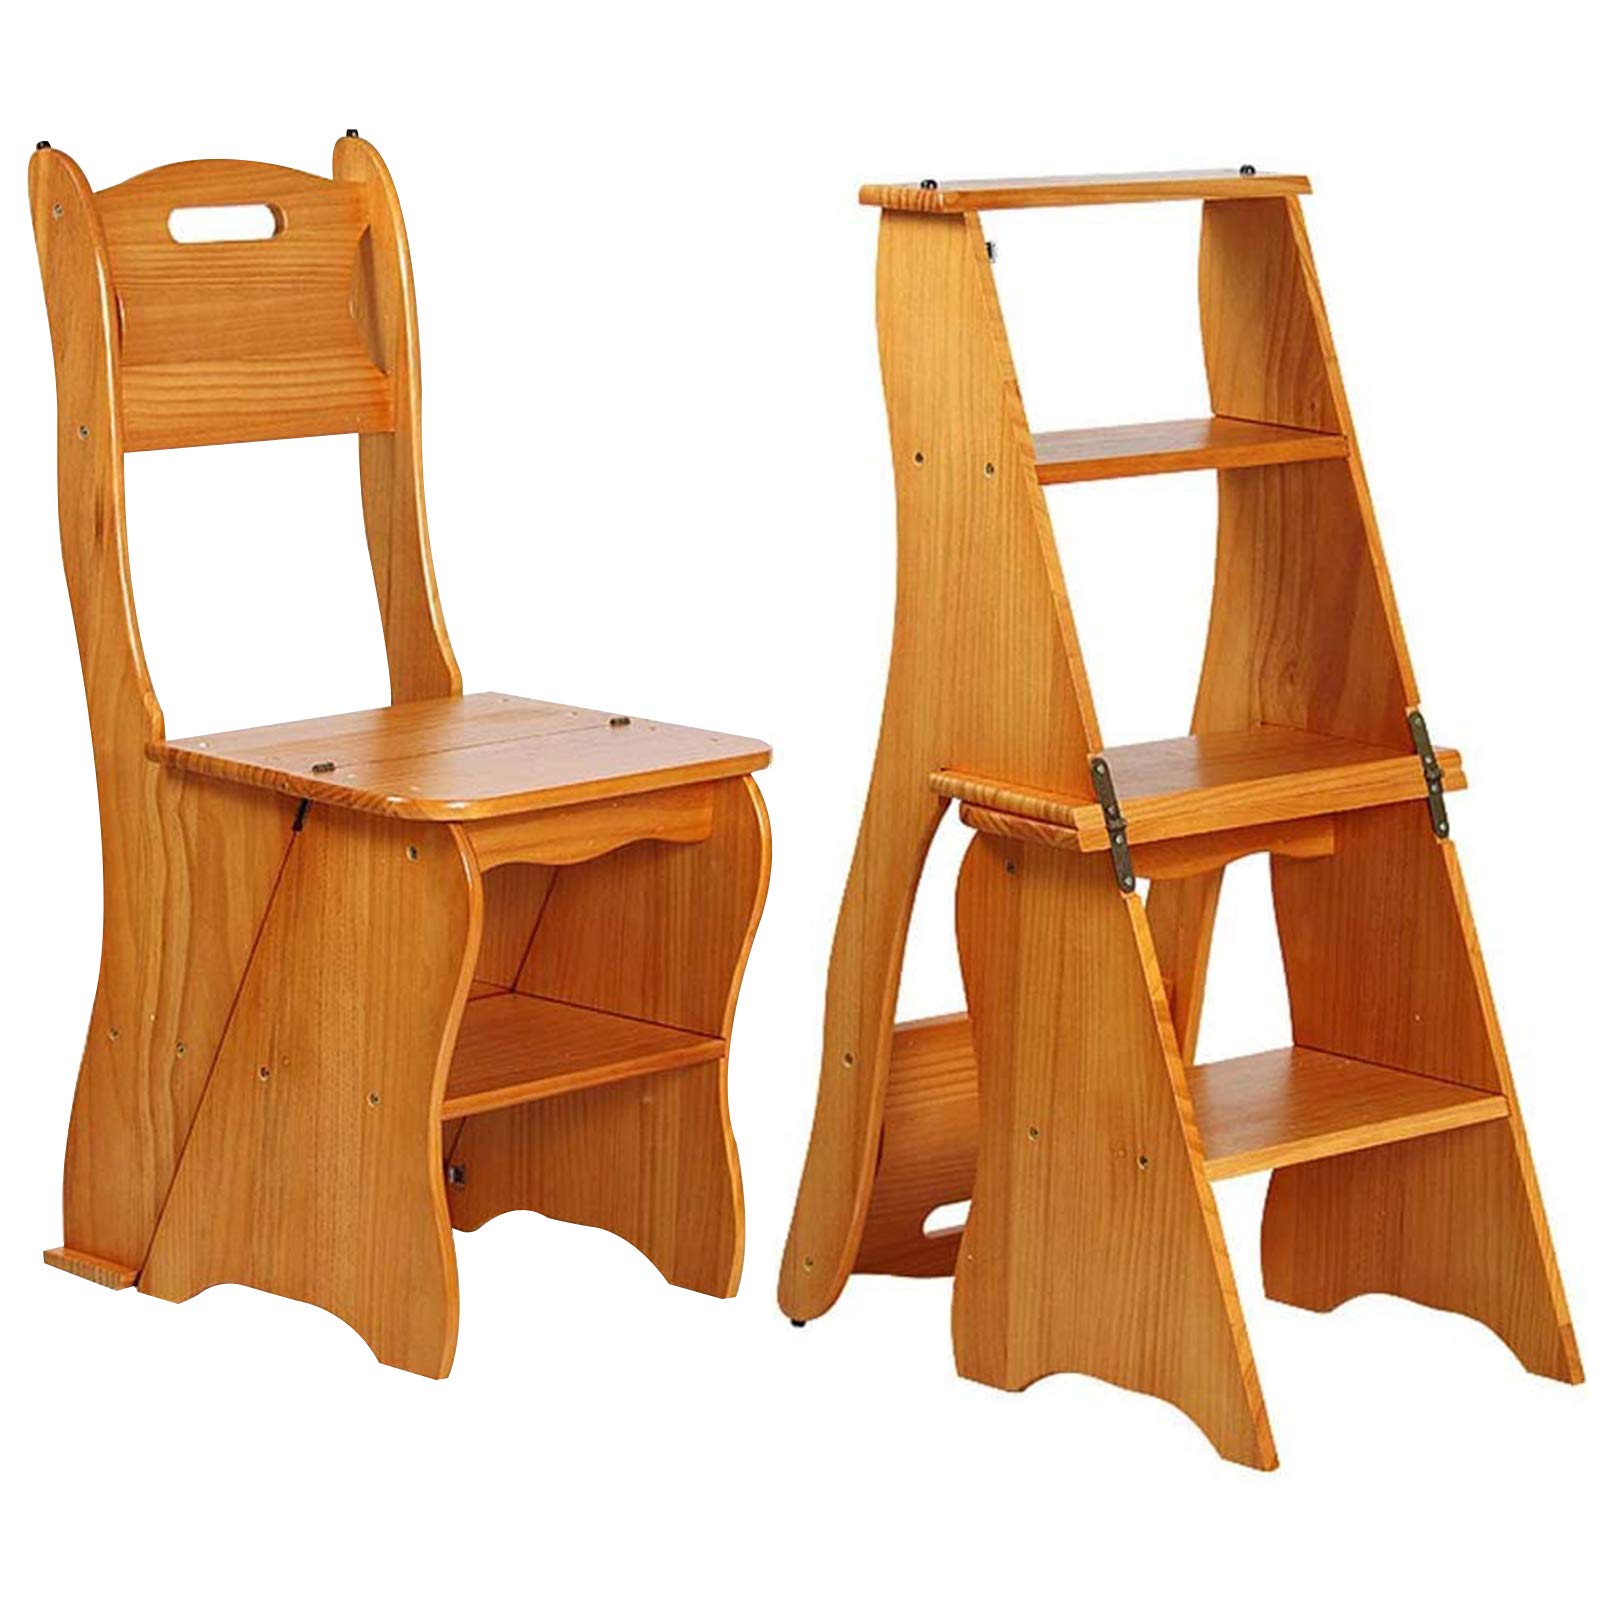 Shangrun Wooden Folding Library Ladder Chair